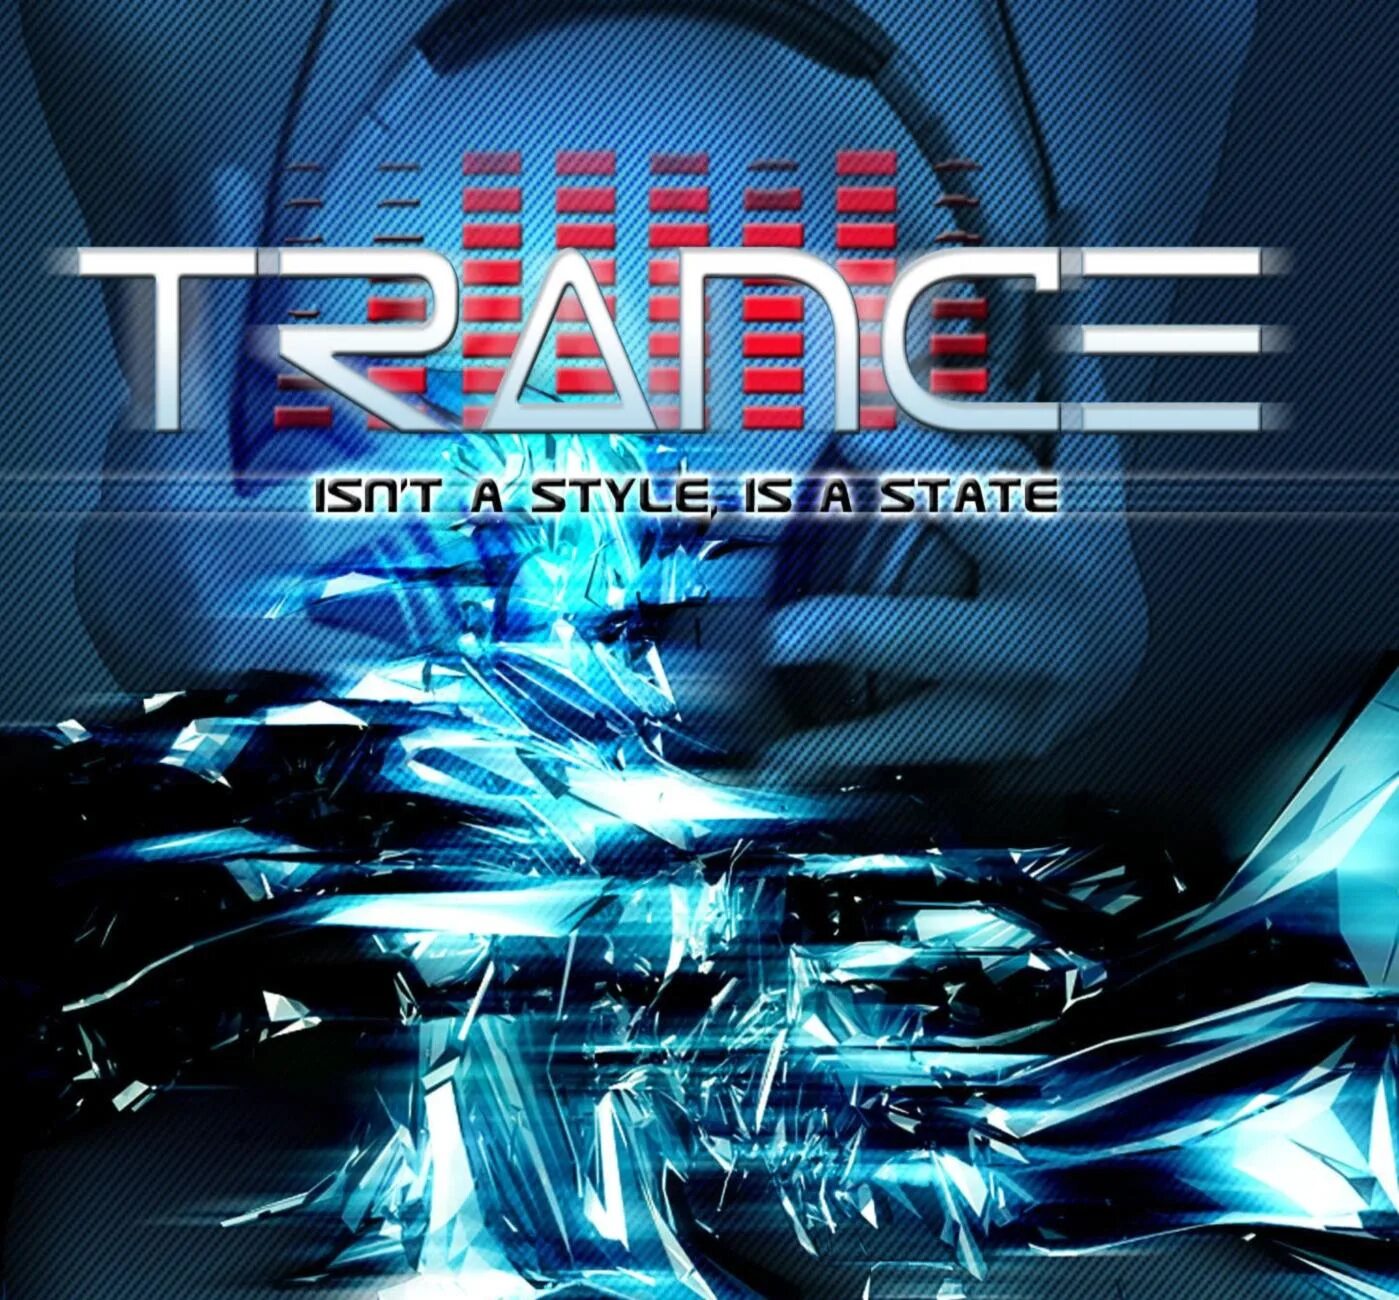 Сборник транс лучшее. Trance. Транс музыка фото. Вокал Trance. Trance 2007 mp3 сборник.